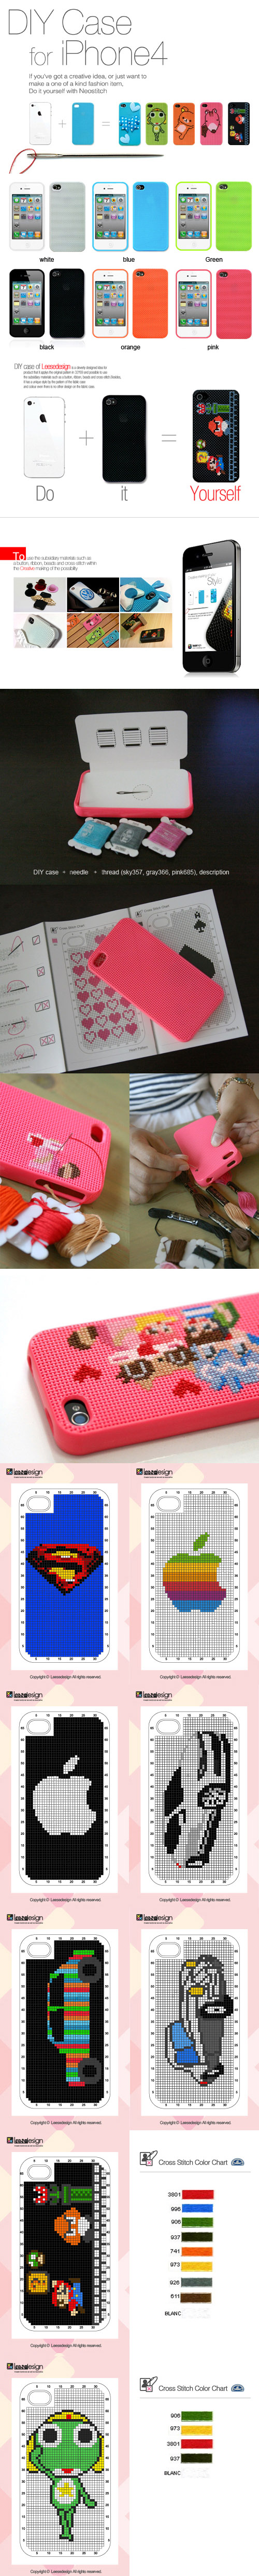 DIY iPhone case 